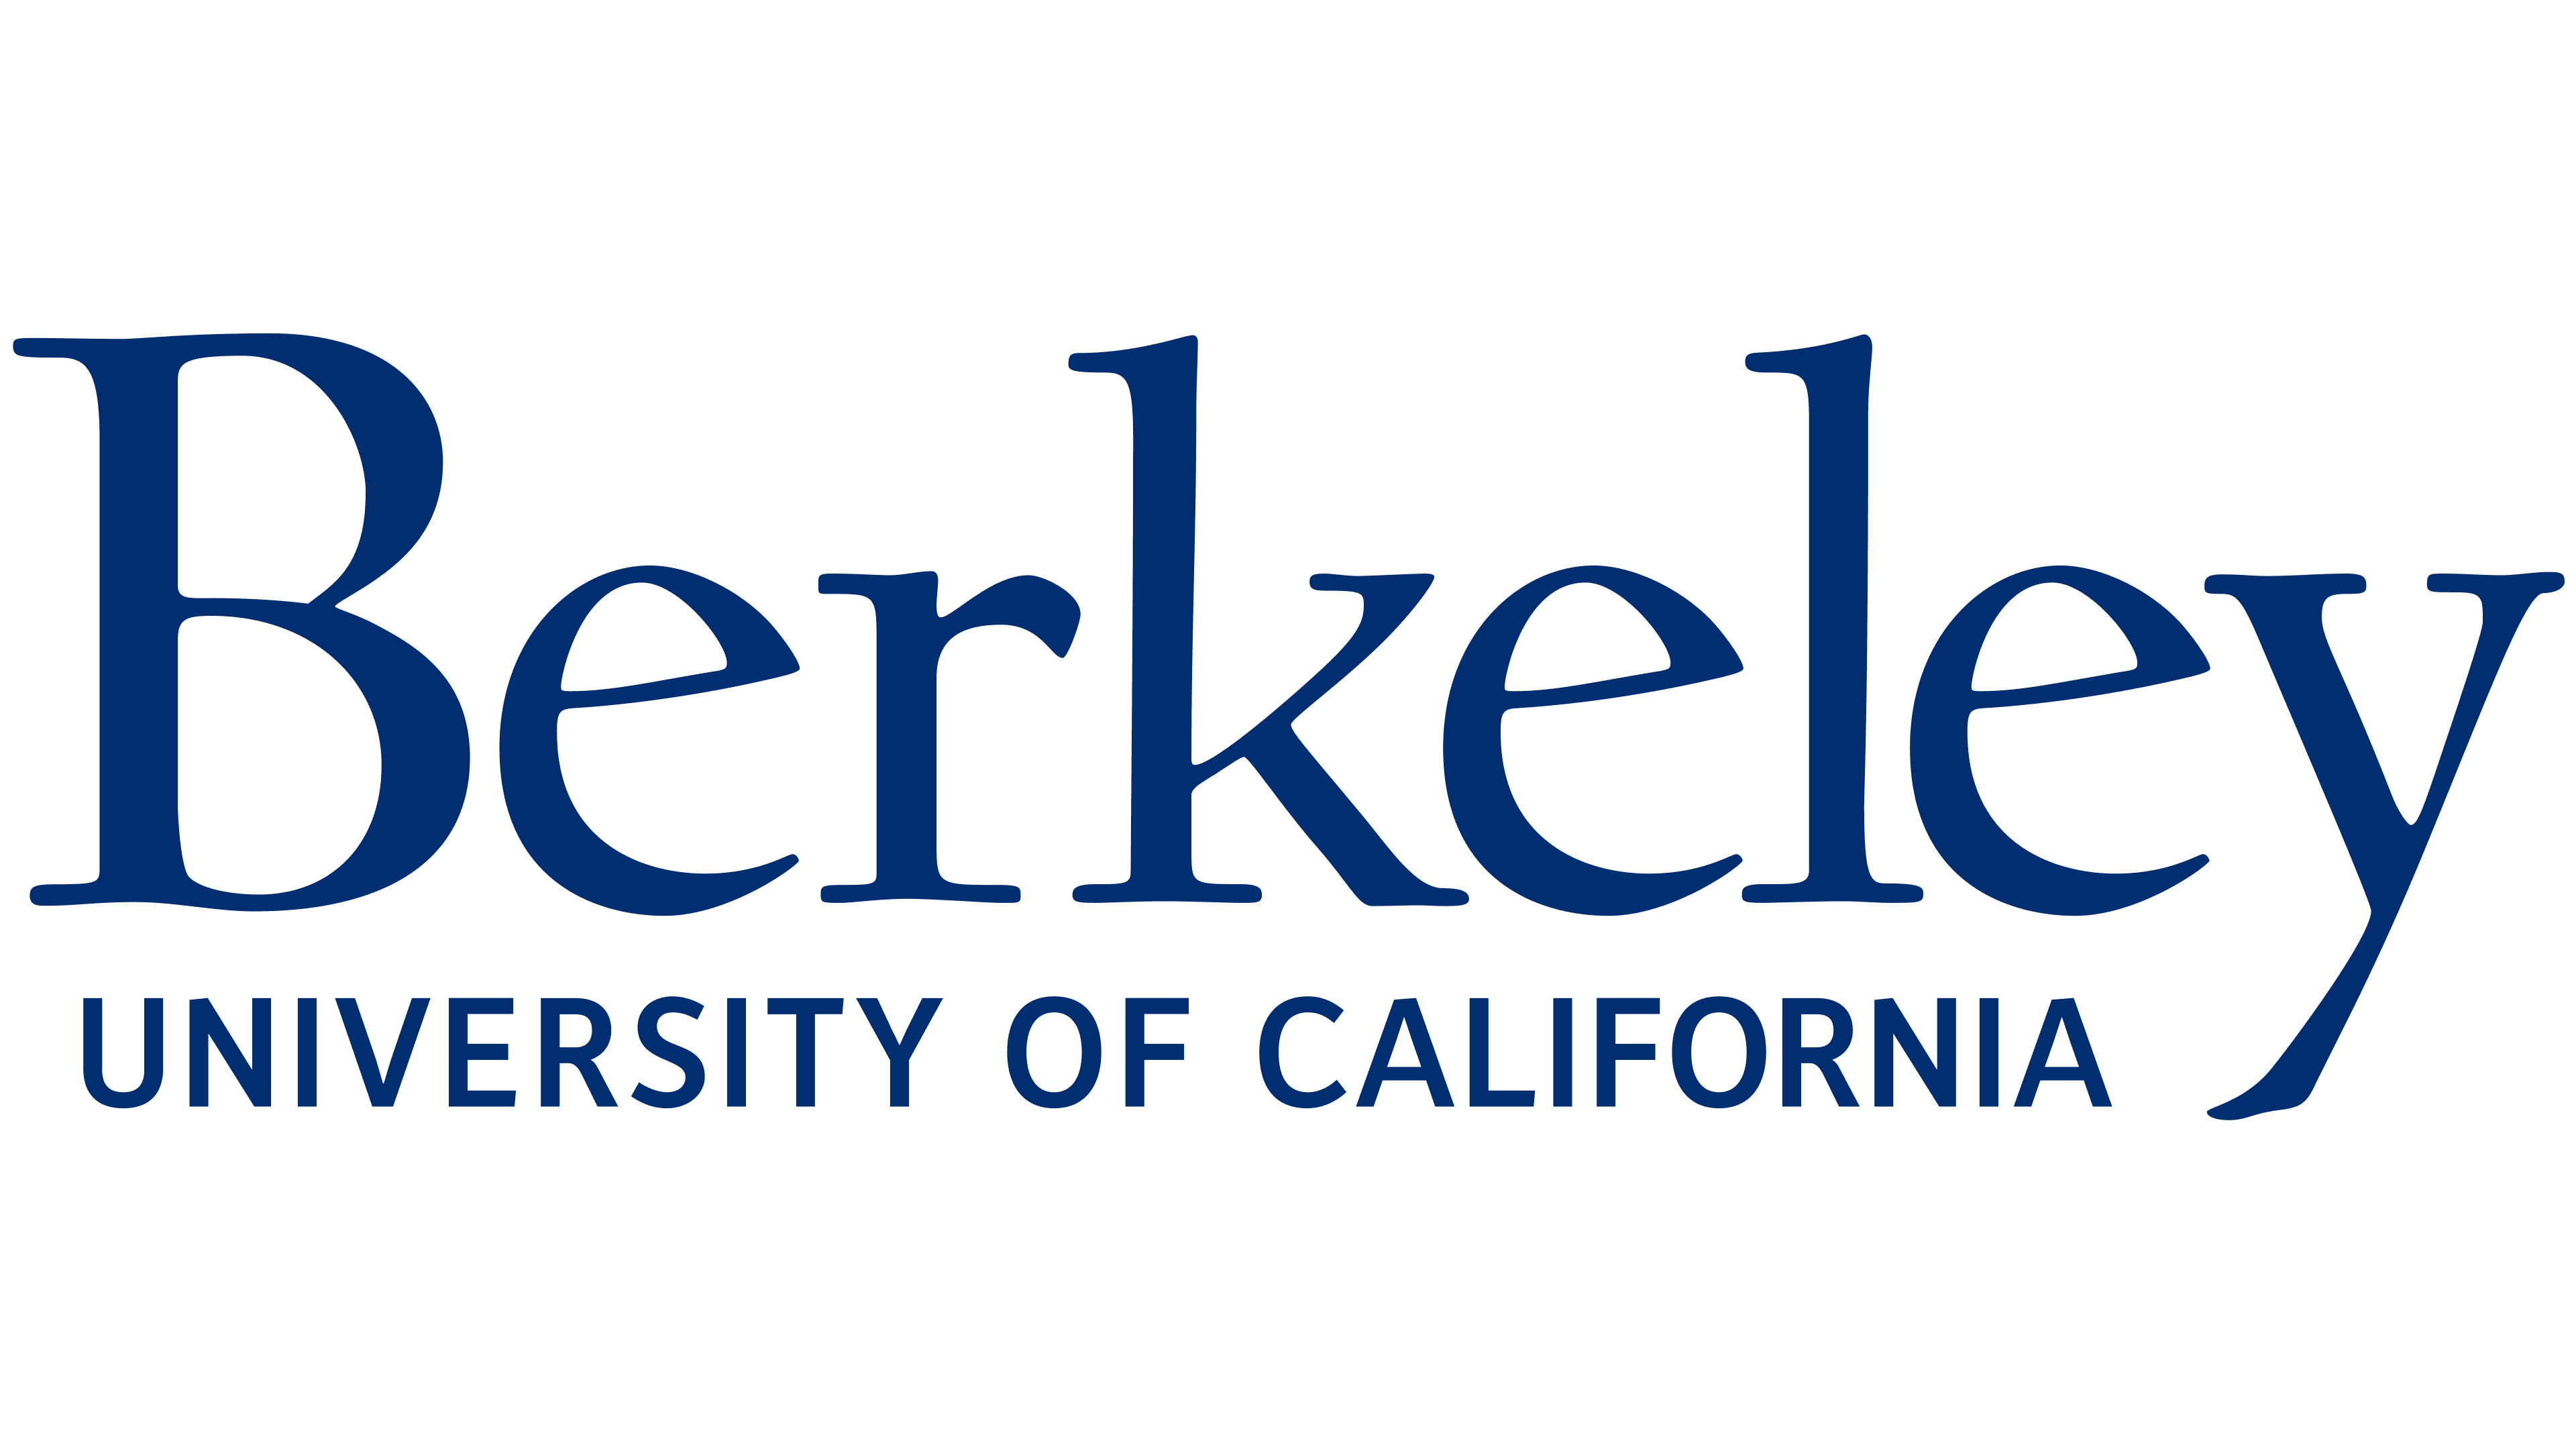 UC Berkeley Logo histoire, signification de l'emblème